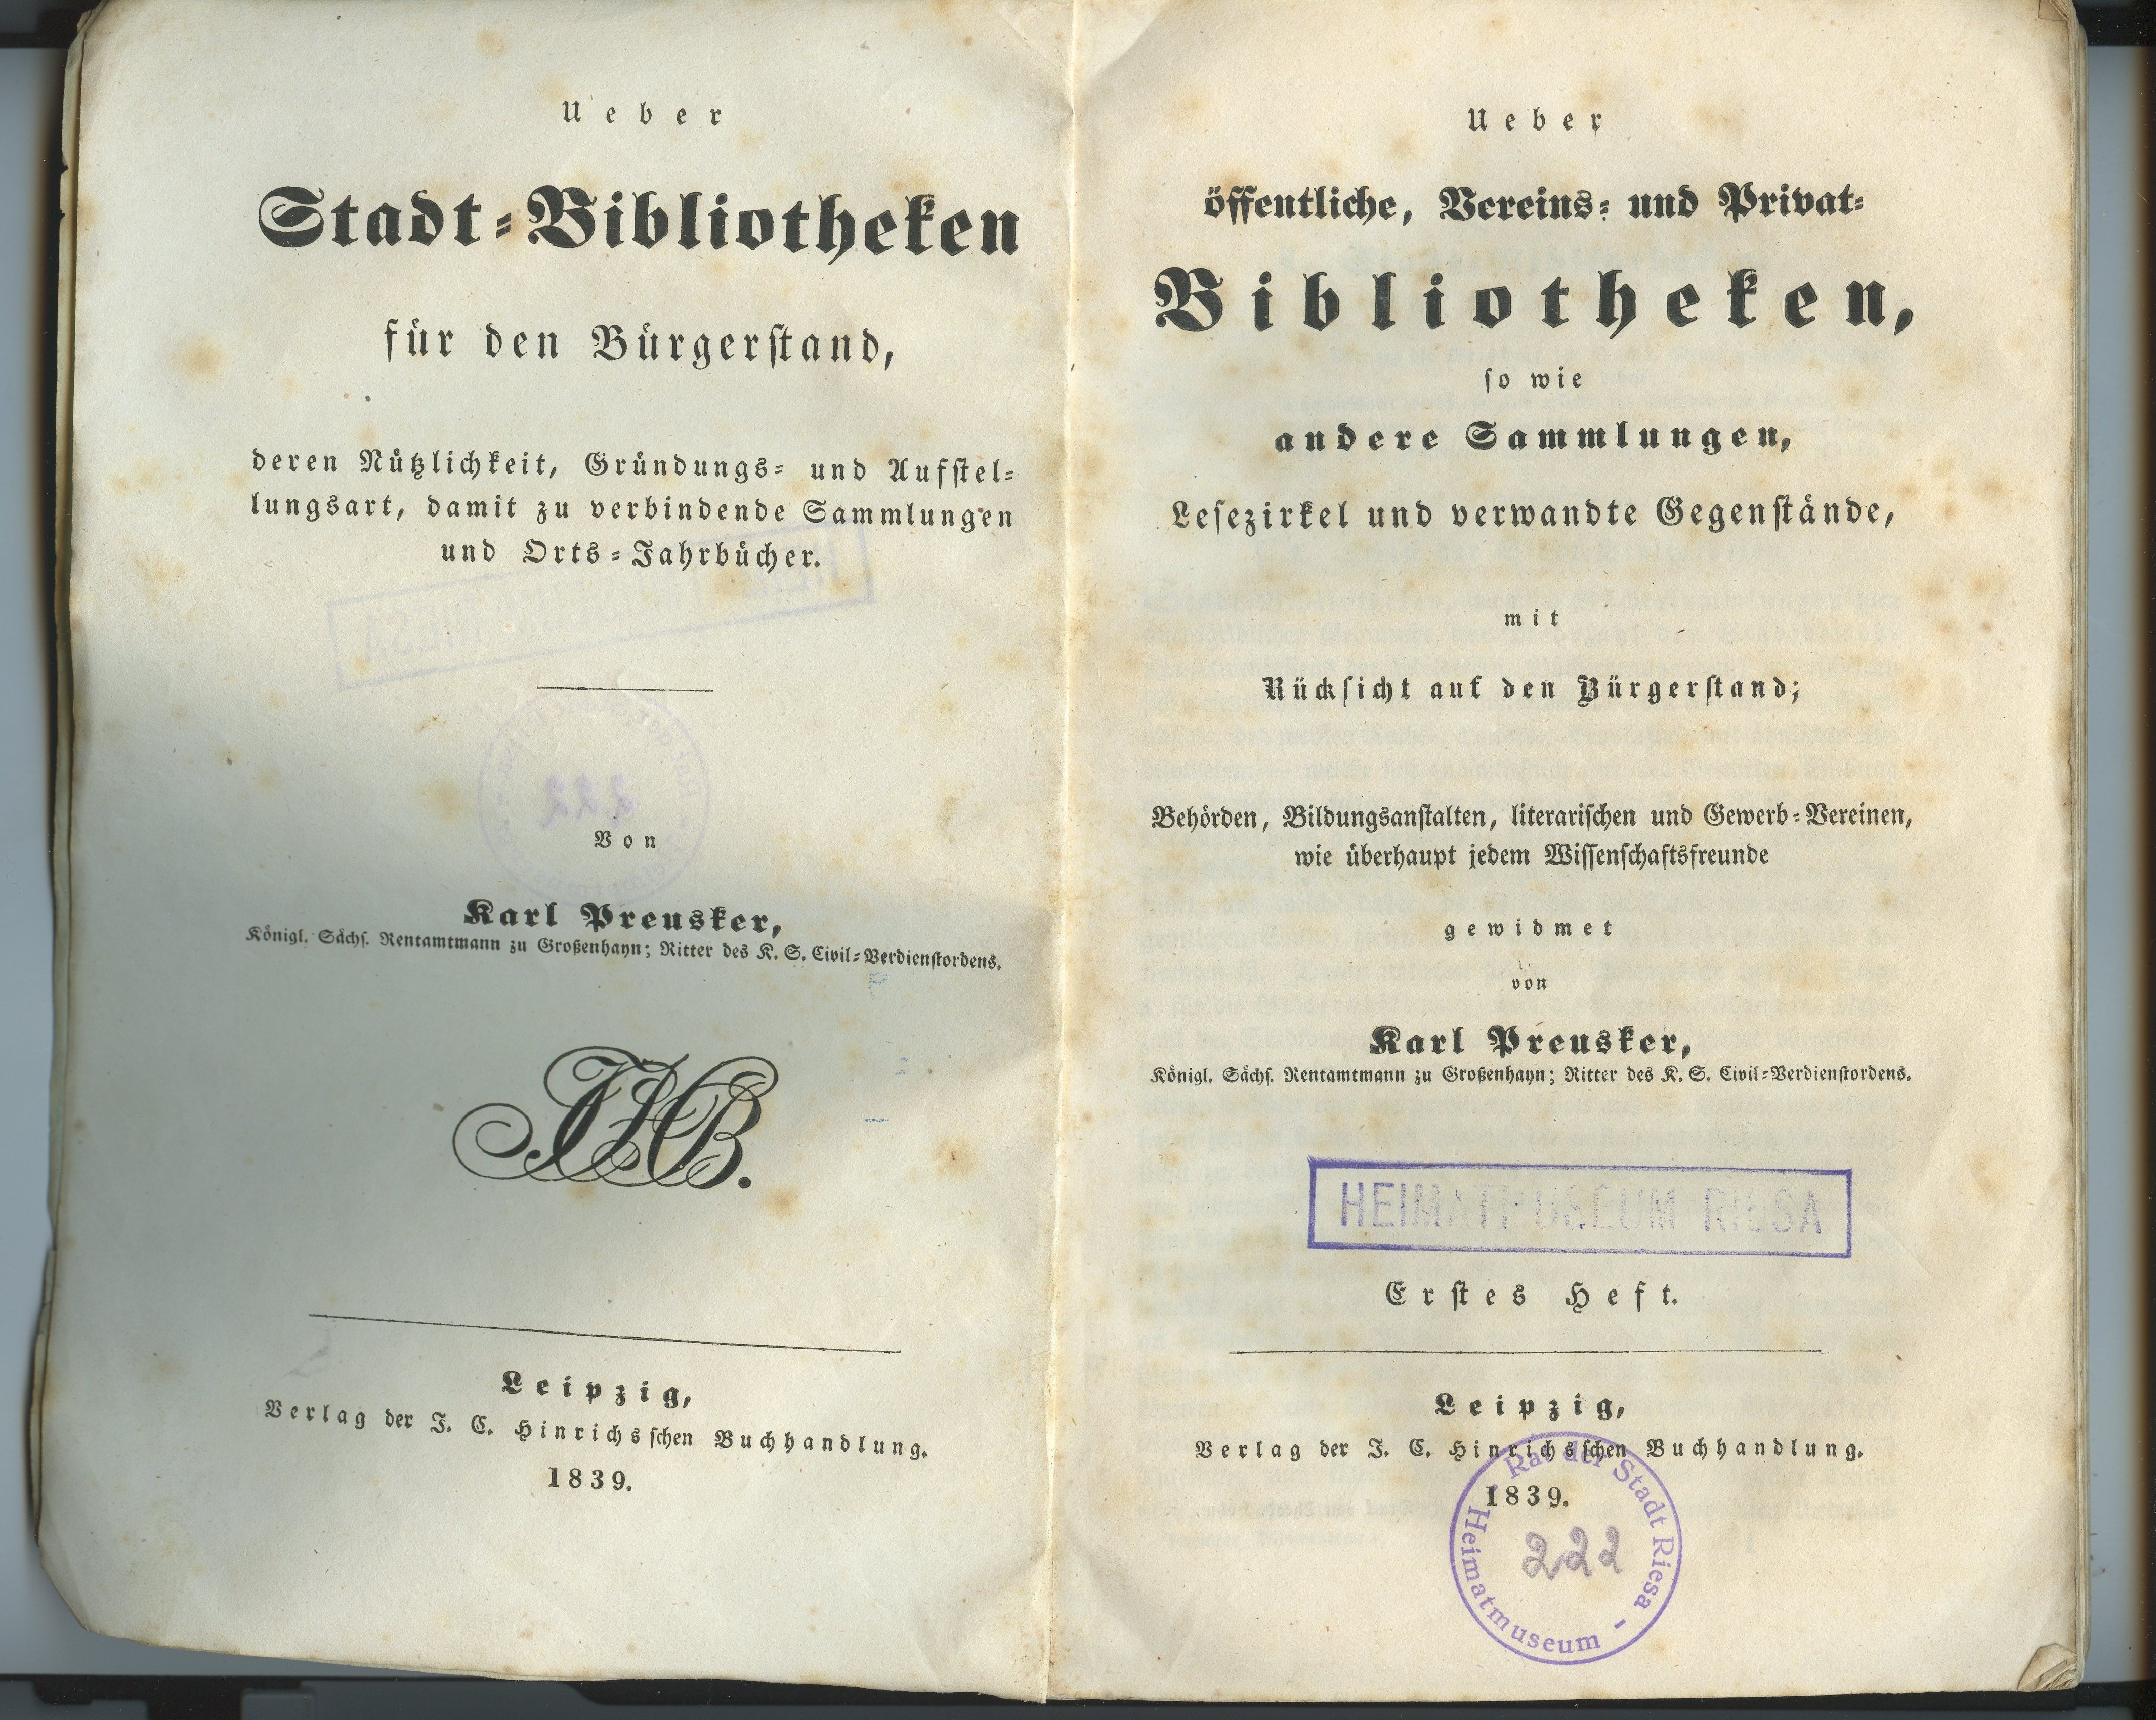 Preusker, Karl: Ueber öffentliche, Vereins- und Privat-Bibliotheken / Ueber Stadt-Bibliotheken für den Bürgerstand, 1839/1840 (Museum Alte Lateinschule CC BY-NC-SA)